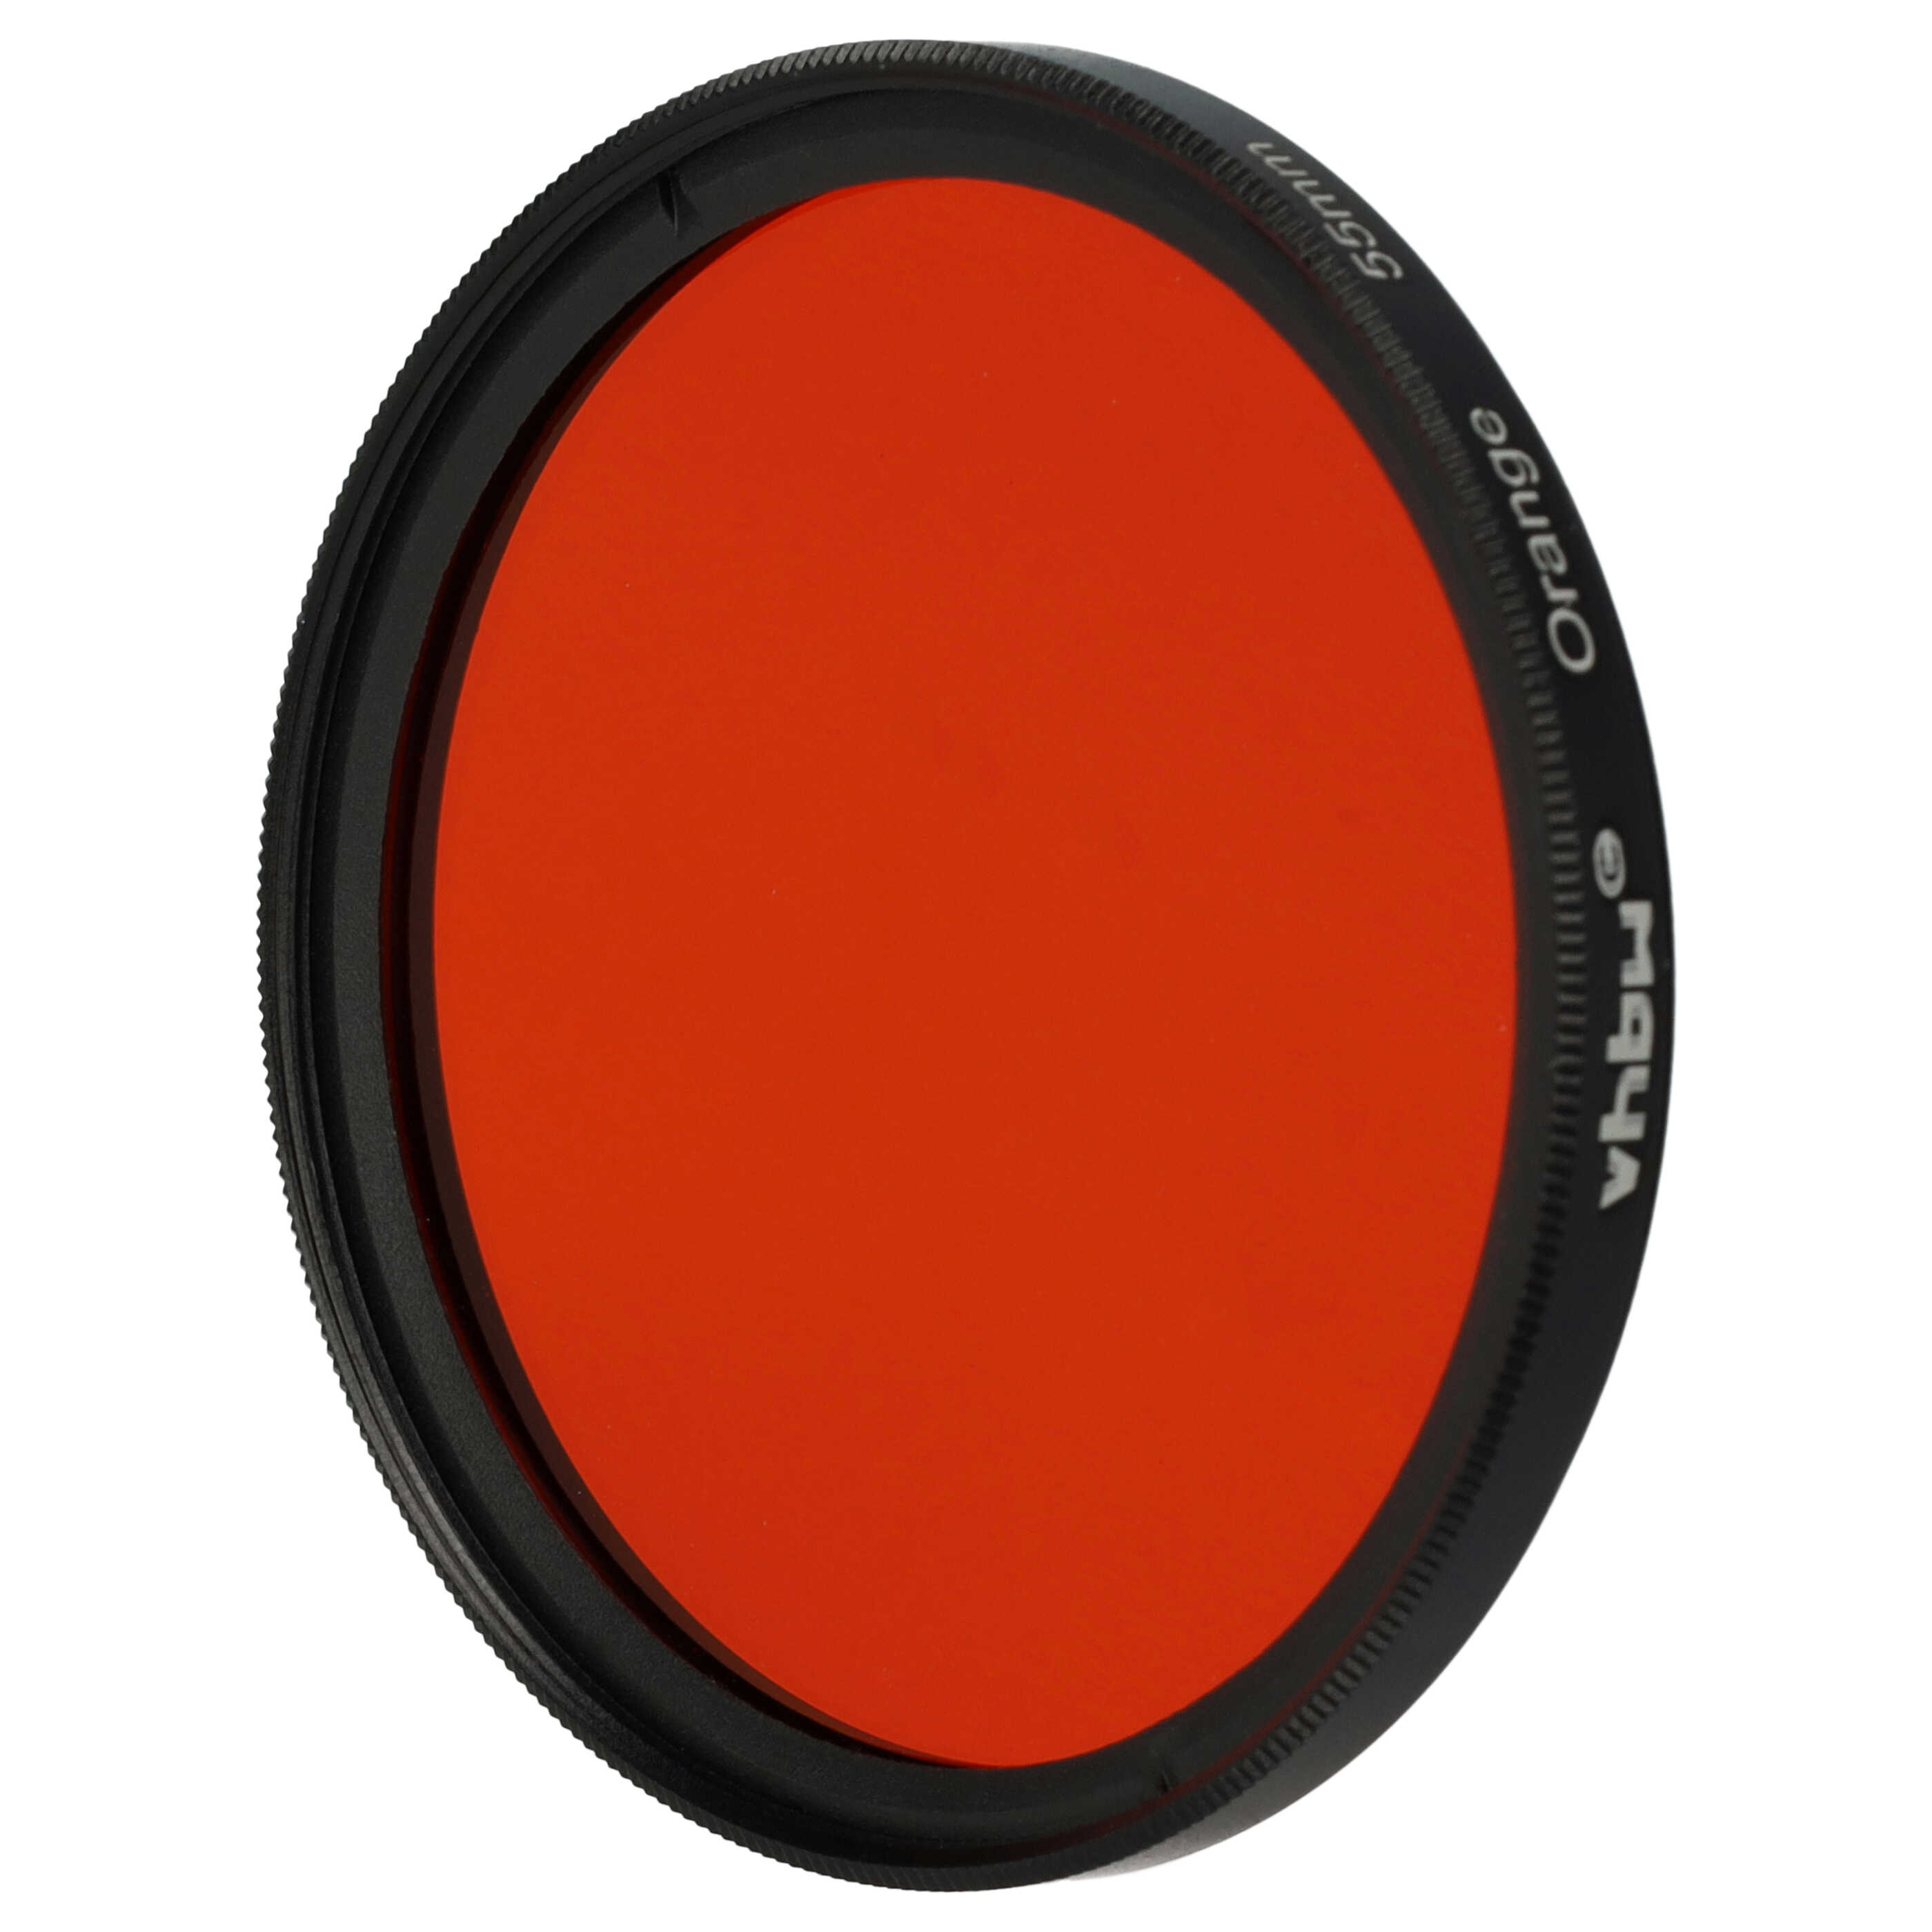 Farbfilter orange passend für Kamera Objektive mit 55 mm Filtergewinde - Orangefilter